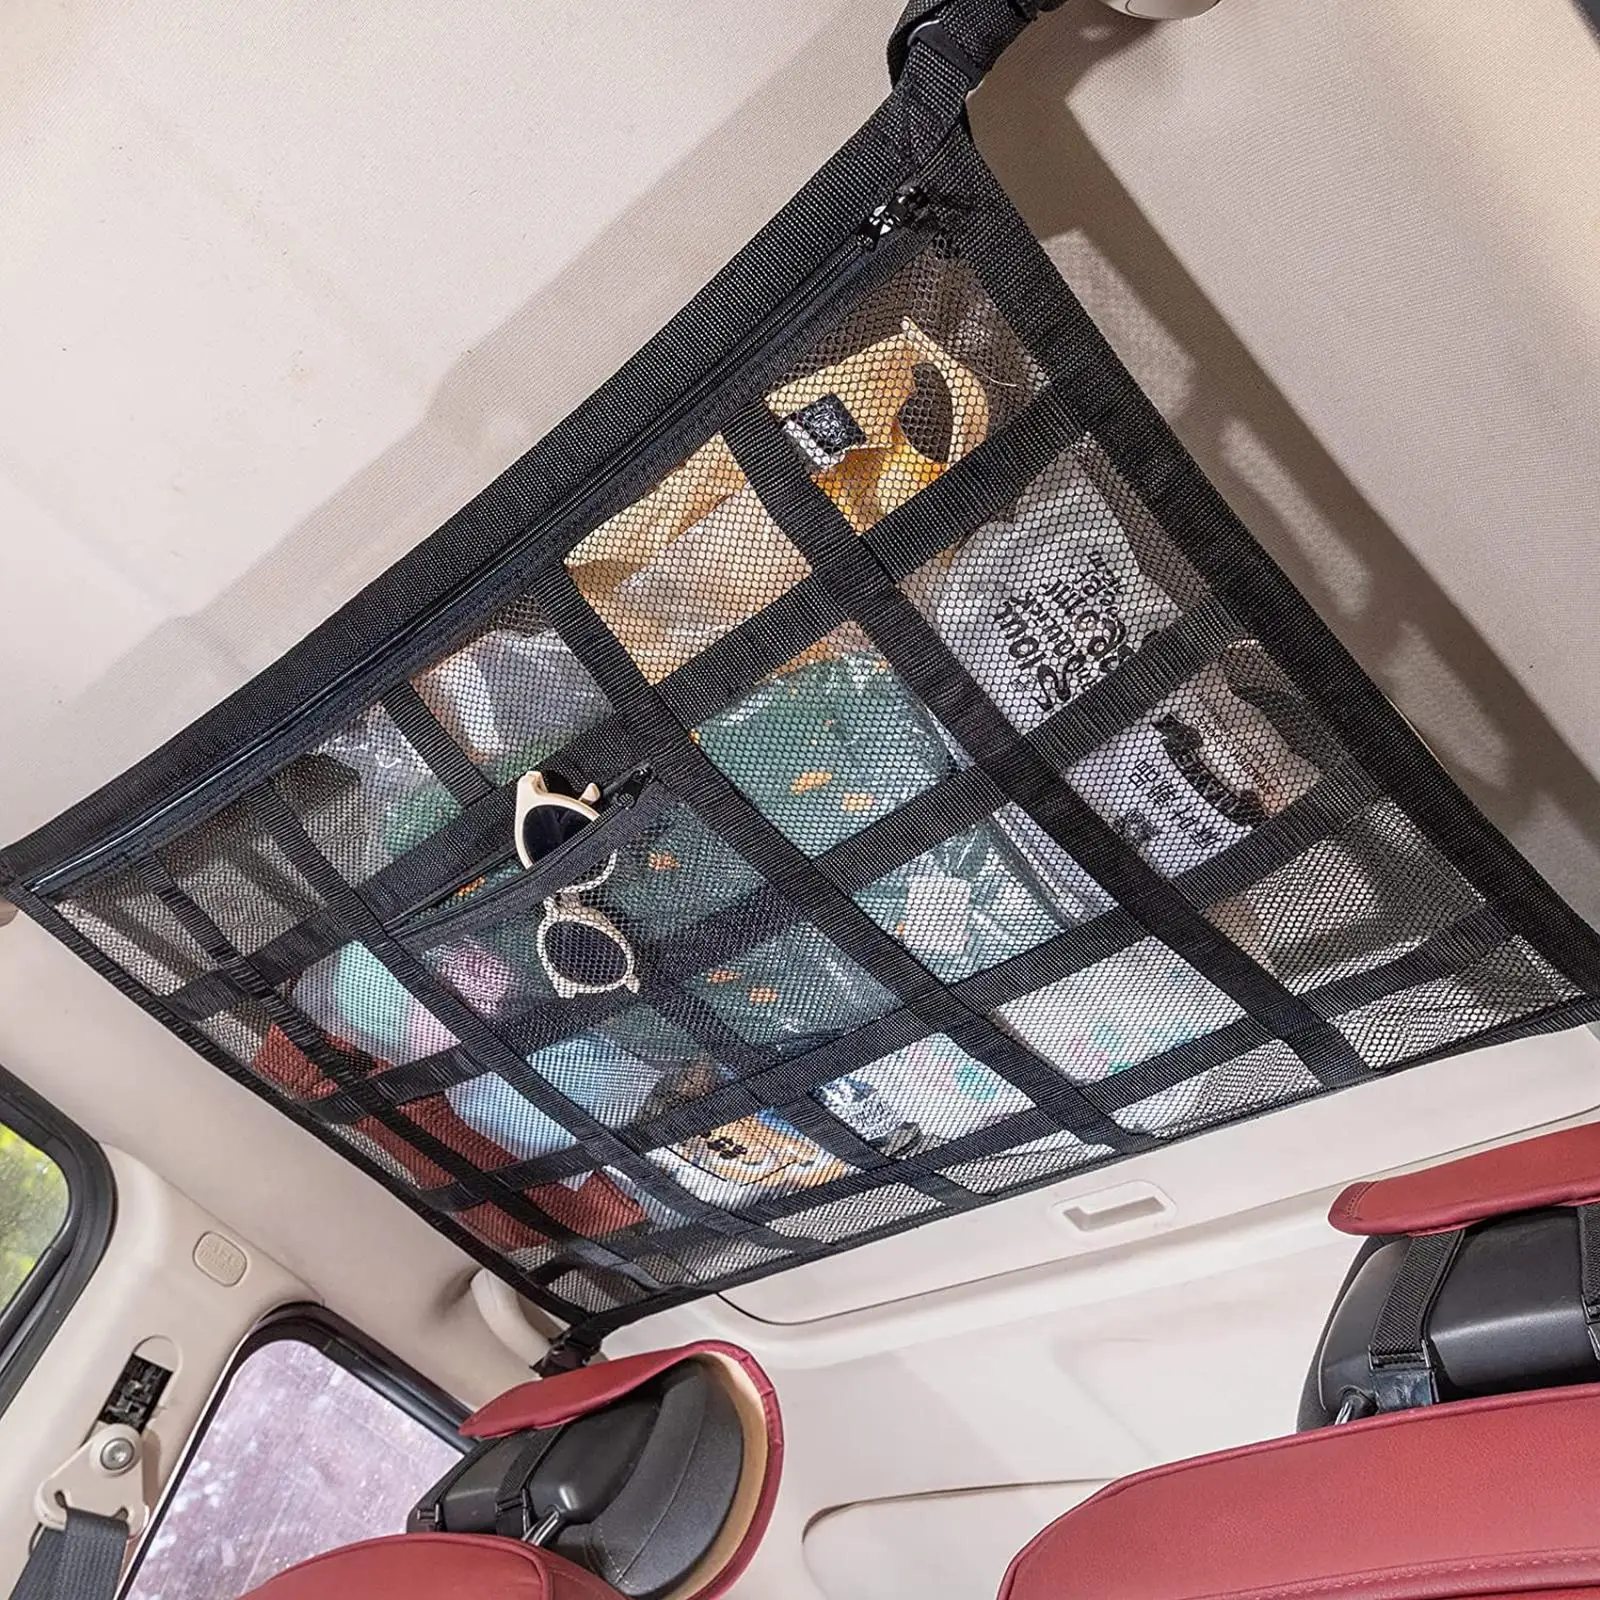 

Автомобильный органайзер для хранения на крыше, Автомобильный потолочный сетчатый органайзер для груза, аксессуары, карманная сумка, сетка для хранения, кемпинг, автомобильная палатка на крыше I6H4